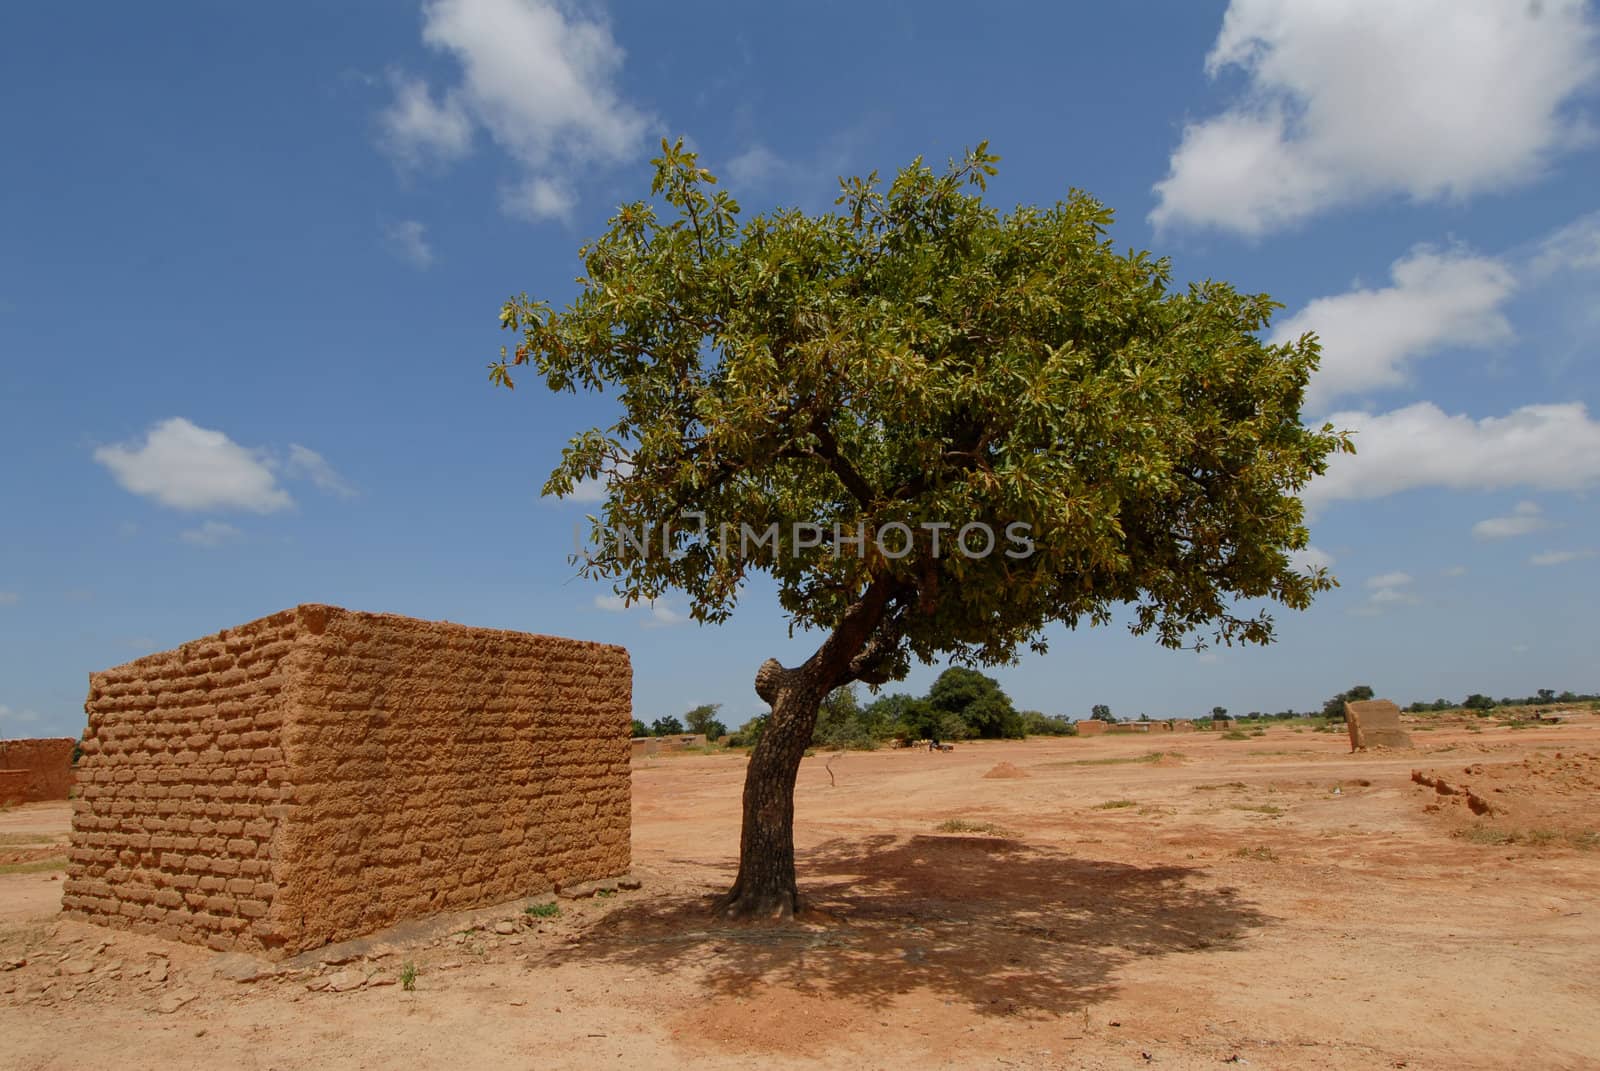 Africa, Burkina Faso shea butter tree